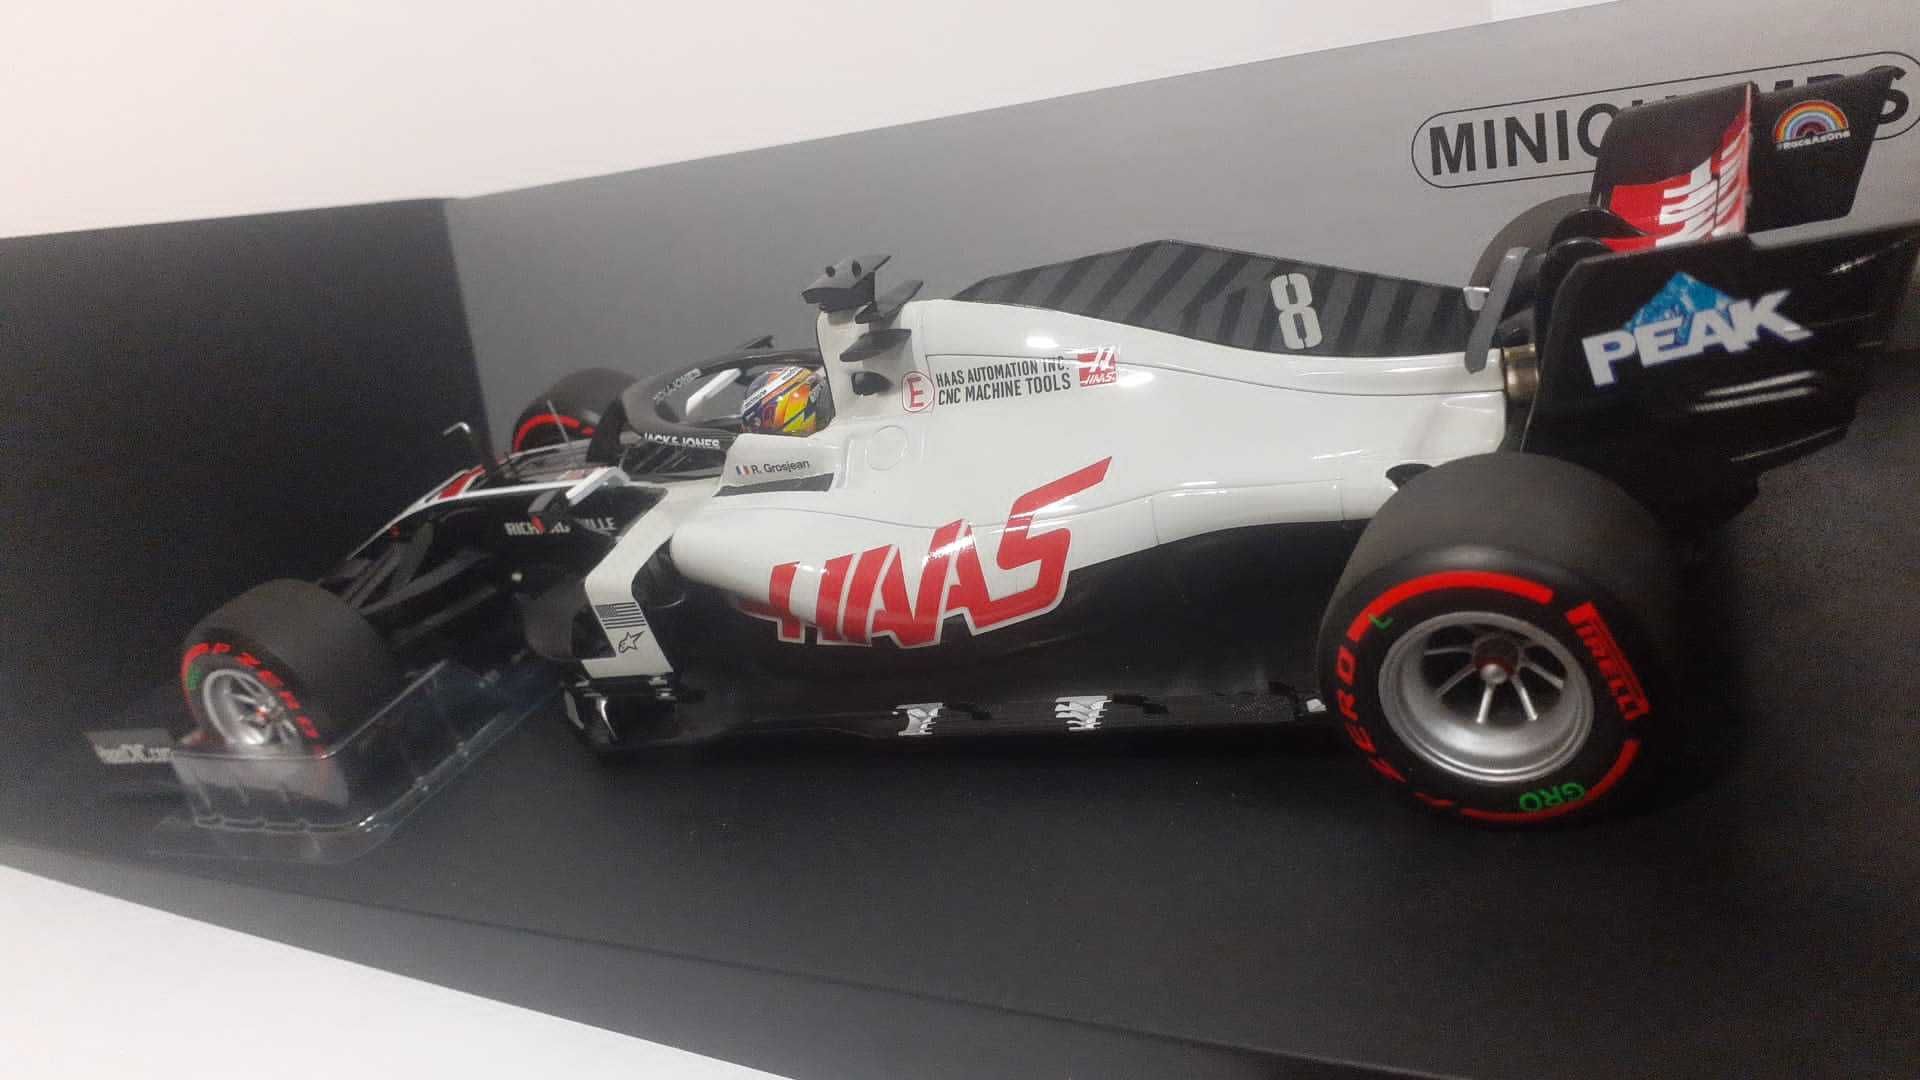 1/18 Haas F1 Team 2020 Roman Grosjean - Minichamps